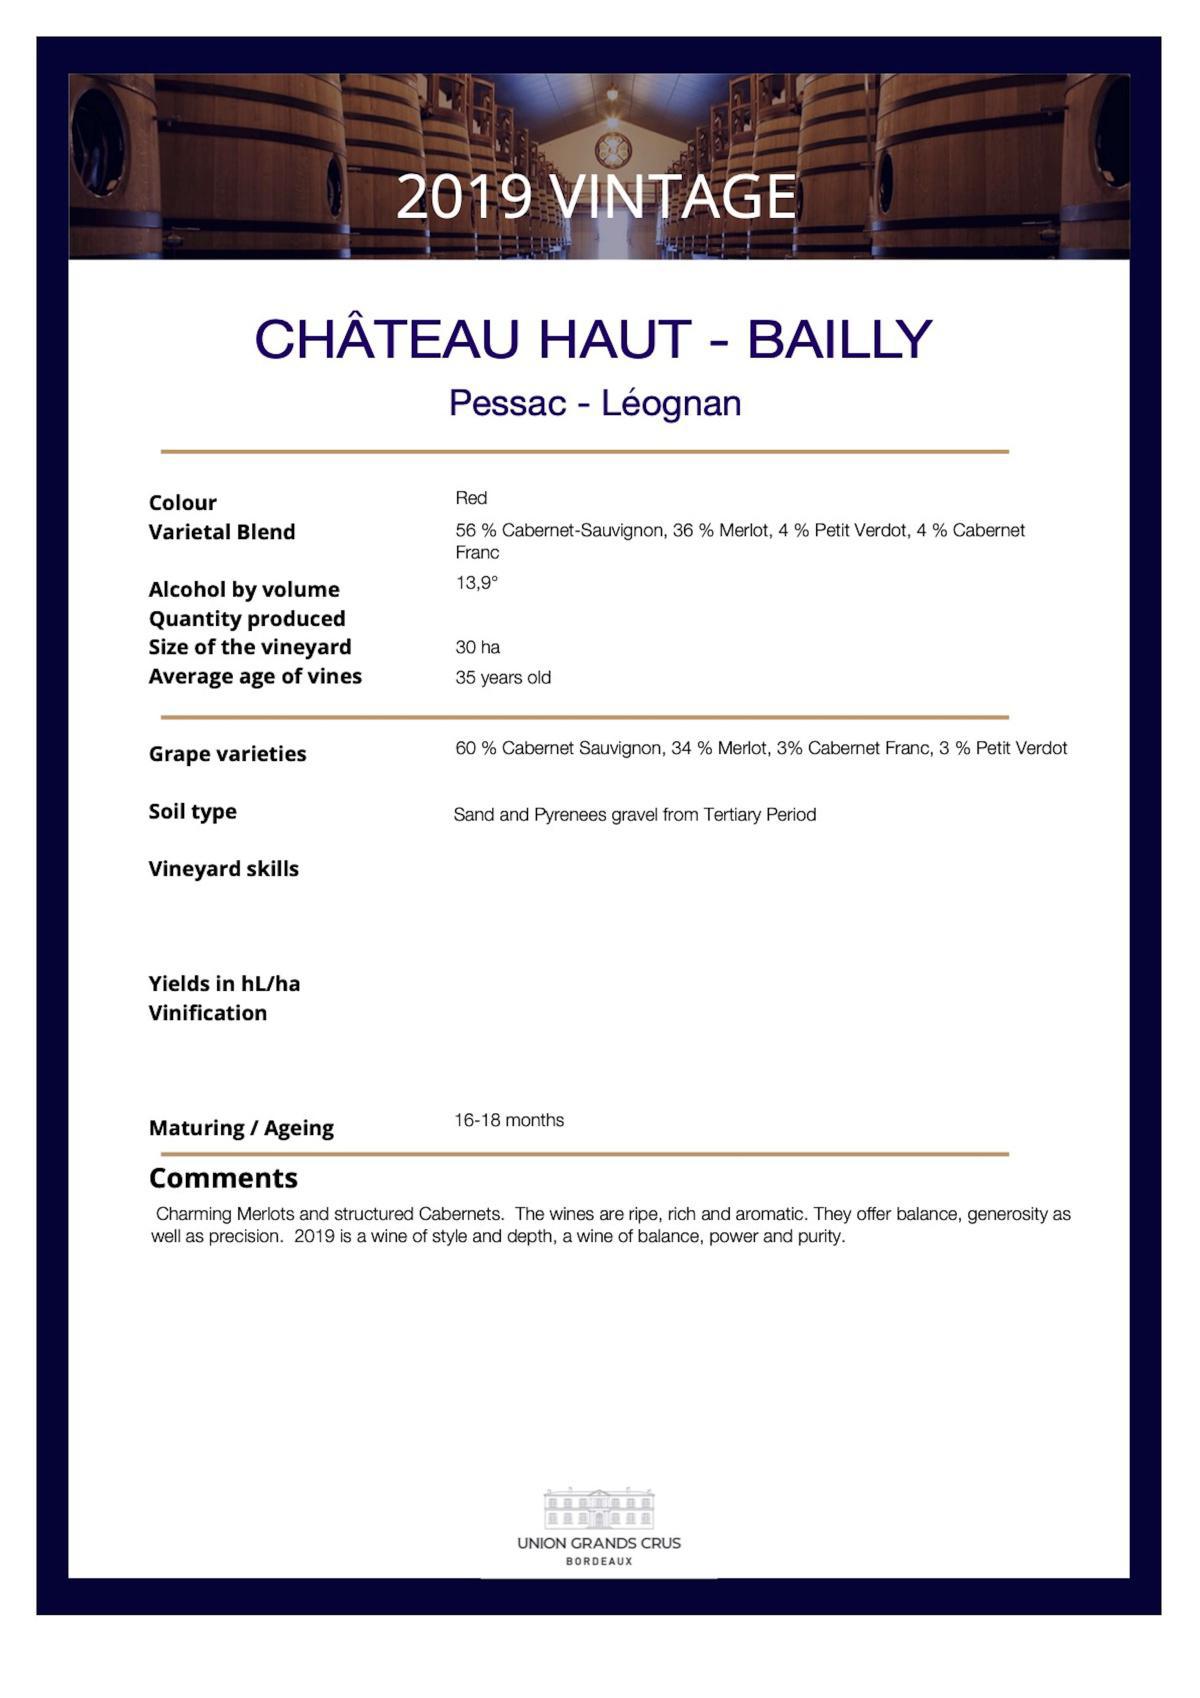 Château Haut - Bailly